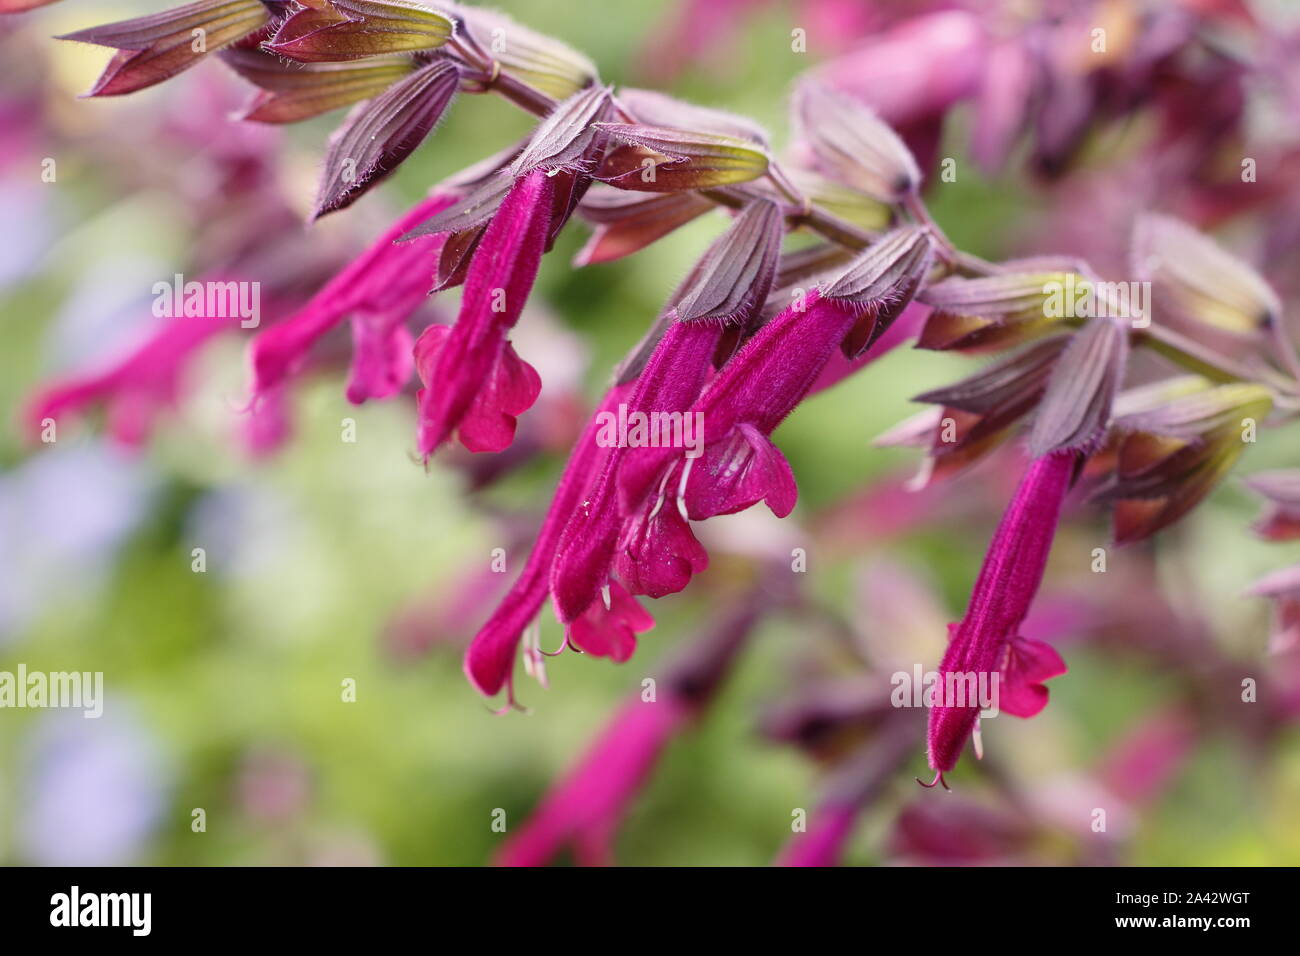 Salvia 'Liebe und Wünsche' aromatischer Salbei angezeigte charakteristischen tiefen magenta Blumen in einem Garten Grenze - September. Großbritannien Stockfoto